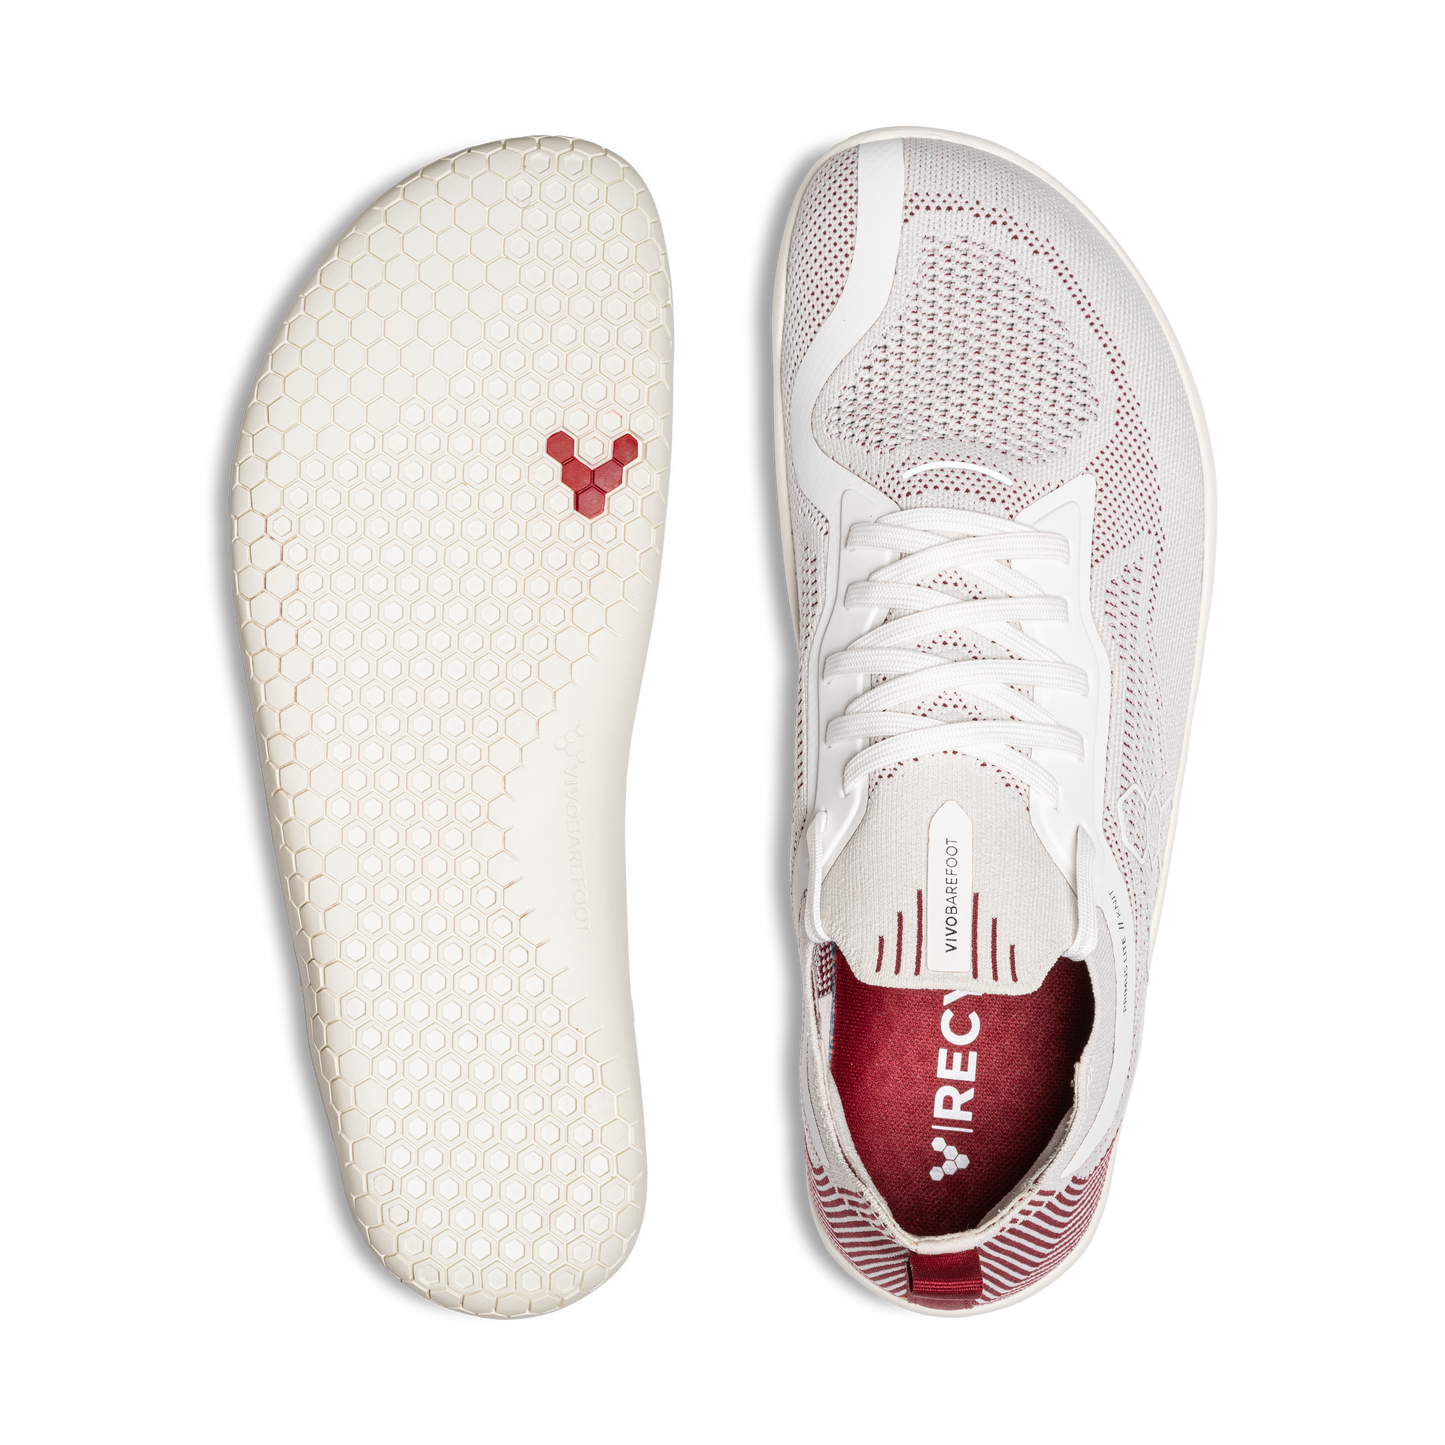 Vivobarefoot Primus Lite Knit barfodssko til kvinder i Off White / Burgundy, viser top og sål-design. Skoen fremhæver fodfrihed og miljøvenlige materialer.